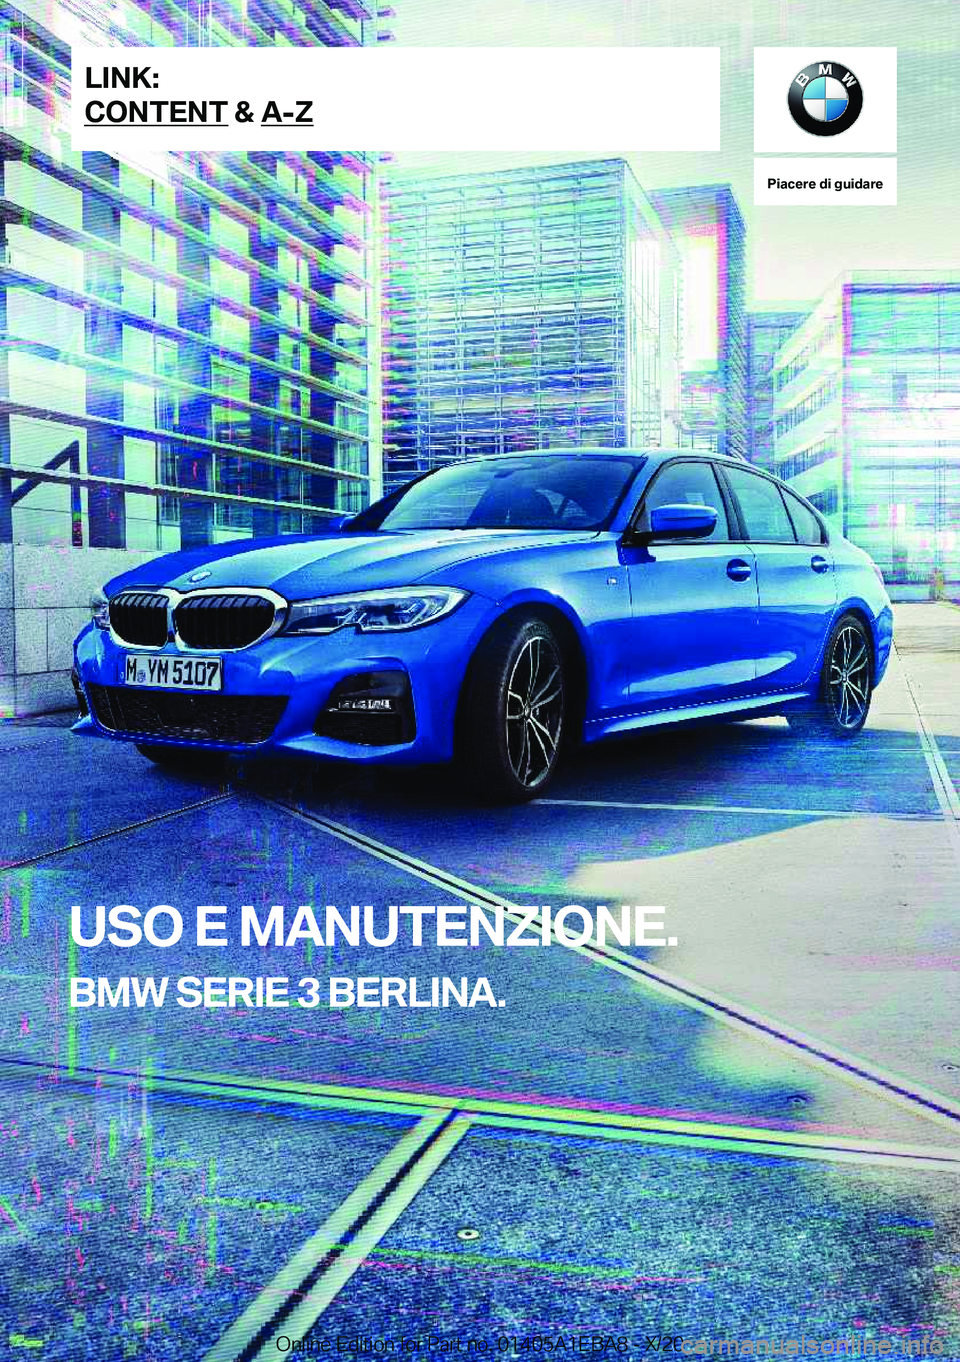 BMW 3 SERIES 2021  Libretti Di Uso E manutenzione (in Italian) �P�i�a�c�e�r�e��d�i��g�u�i�d�a�r�e
�U�S�O��E��M�A�N�U�T�E�N�Z�I�O�N�E�.
�B�M�W��S�E�R�I�E��3��B�E�R�L�I�N�A�.�L�I�N�K�:
�C�O�N�T�E�N�T��&��A�-�Z�O�n�l�i�n�e��E�d�i�t�i�o�n��f�o�r��P�a�r�t�